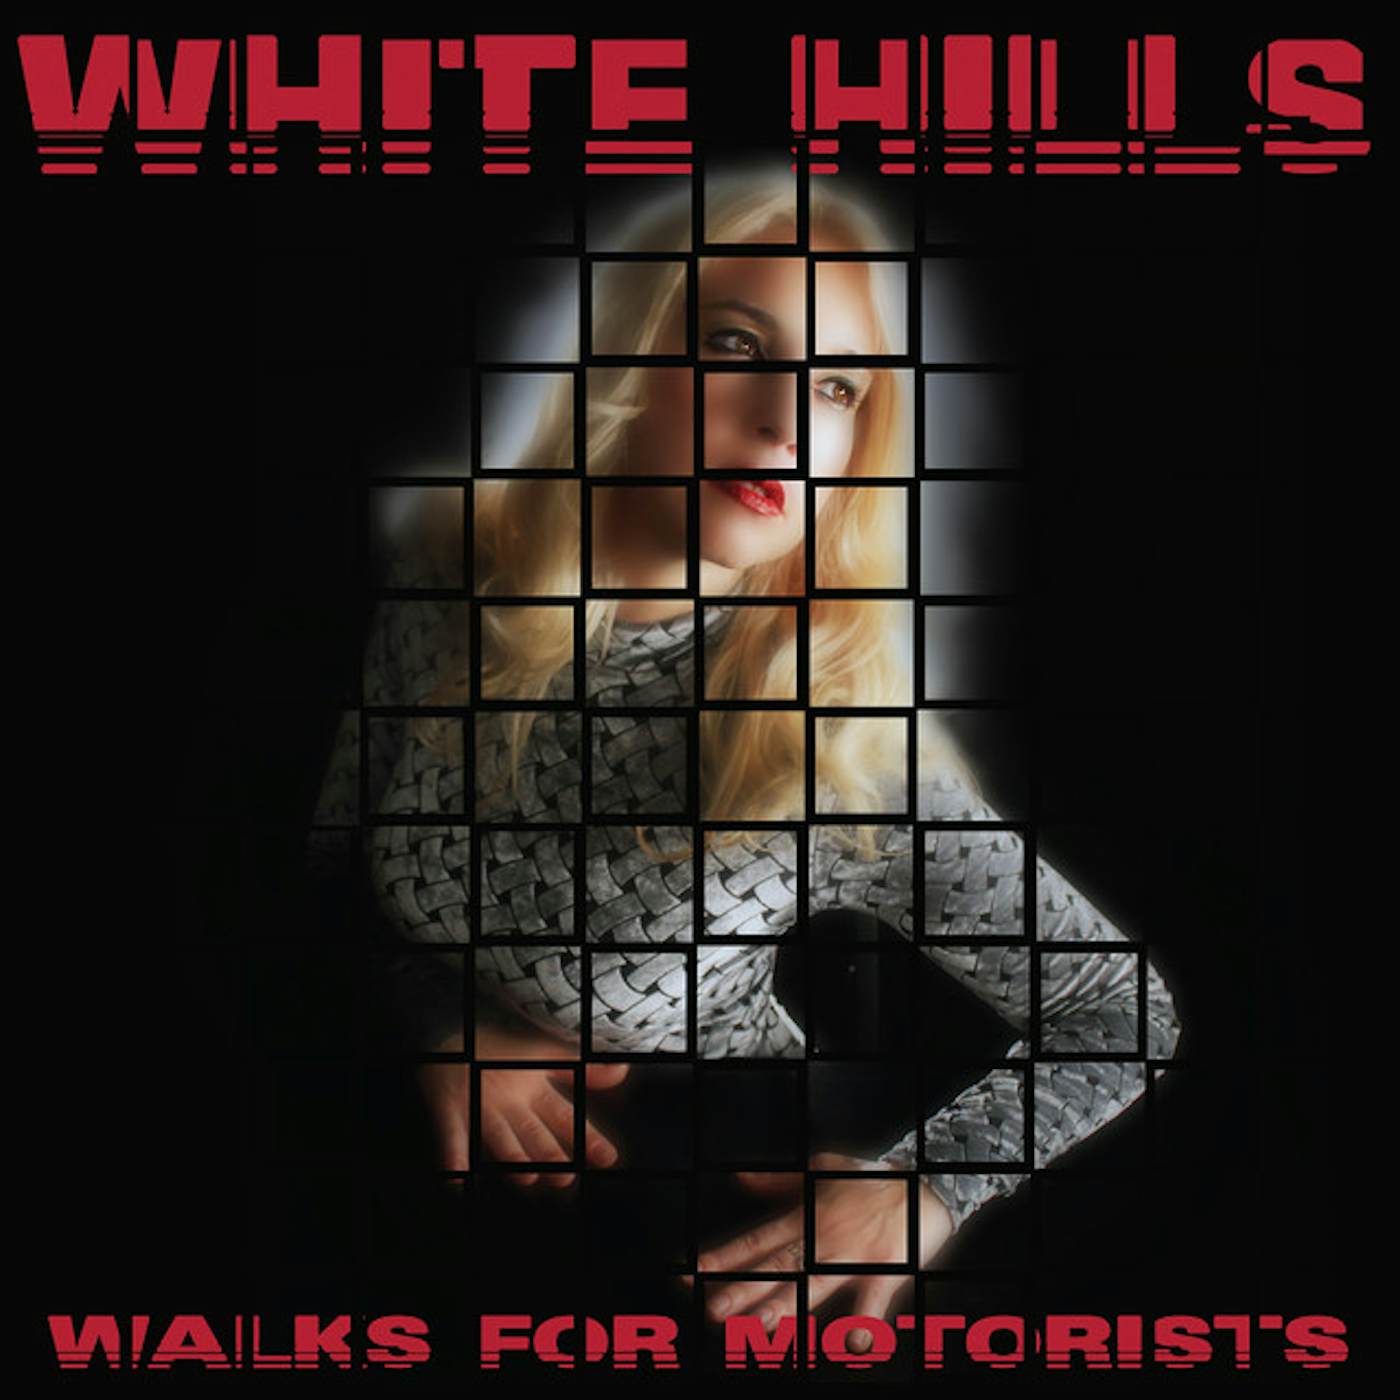 White Hills WALKS FOR MOTORS Vinyl Record